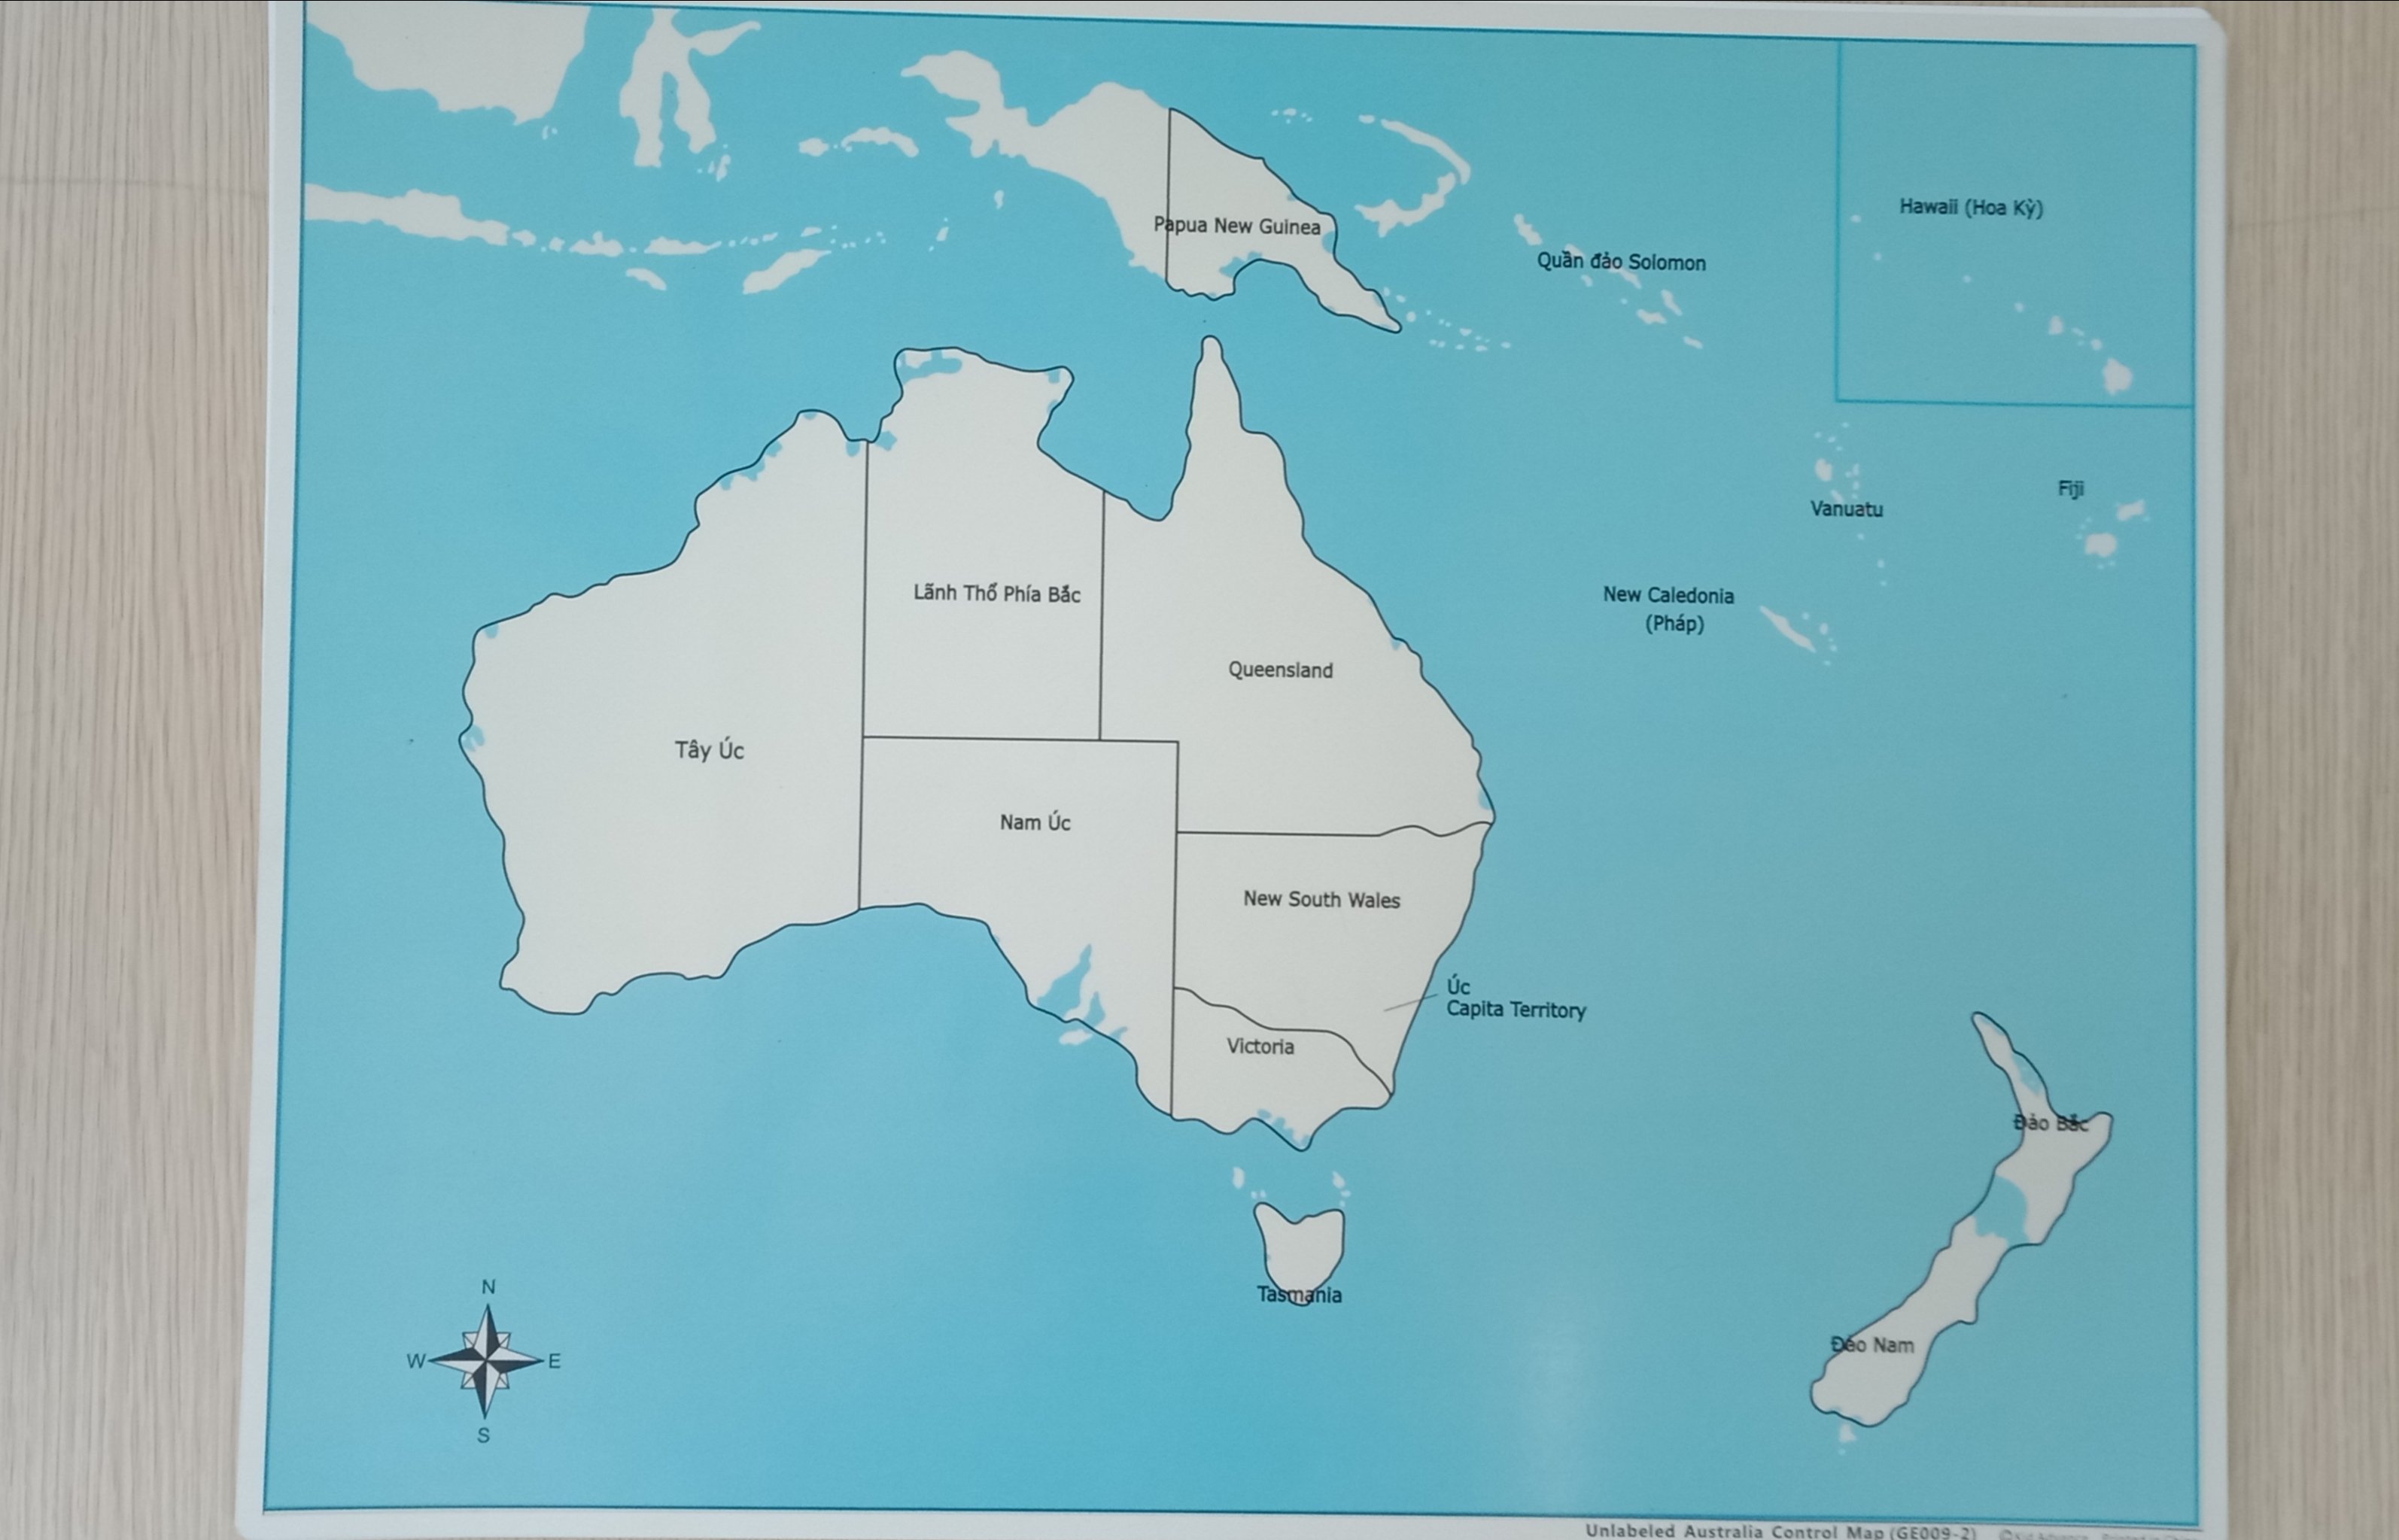 Bản đồ Châu Úc sẽ trở nên dễ hiểu hơn với bảng kiểm soát bản đồ bằng tiếng Việt. Bạn sẽ không còn gặp khó khăn trong việc tìm kiếm và định vị các quốc gia và vùng lãnh thổ. Hãy khám phá châu lục đầy màu sắc và thú vị này một cách dễ dàng và yên tâm.